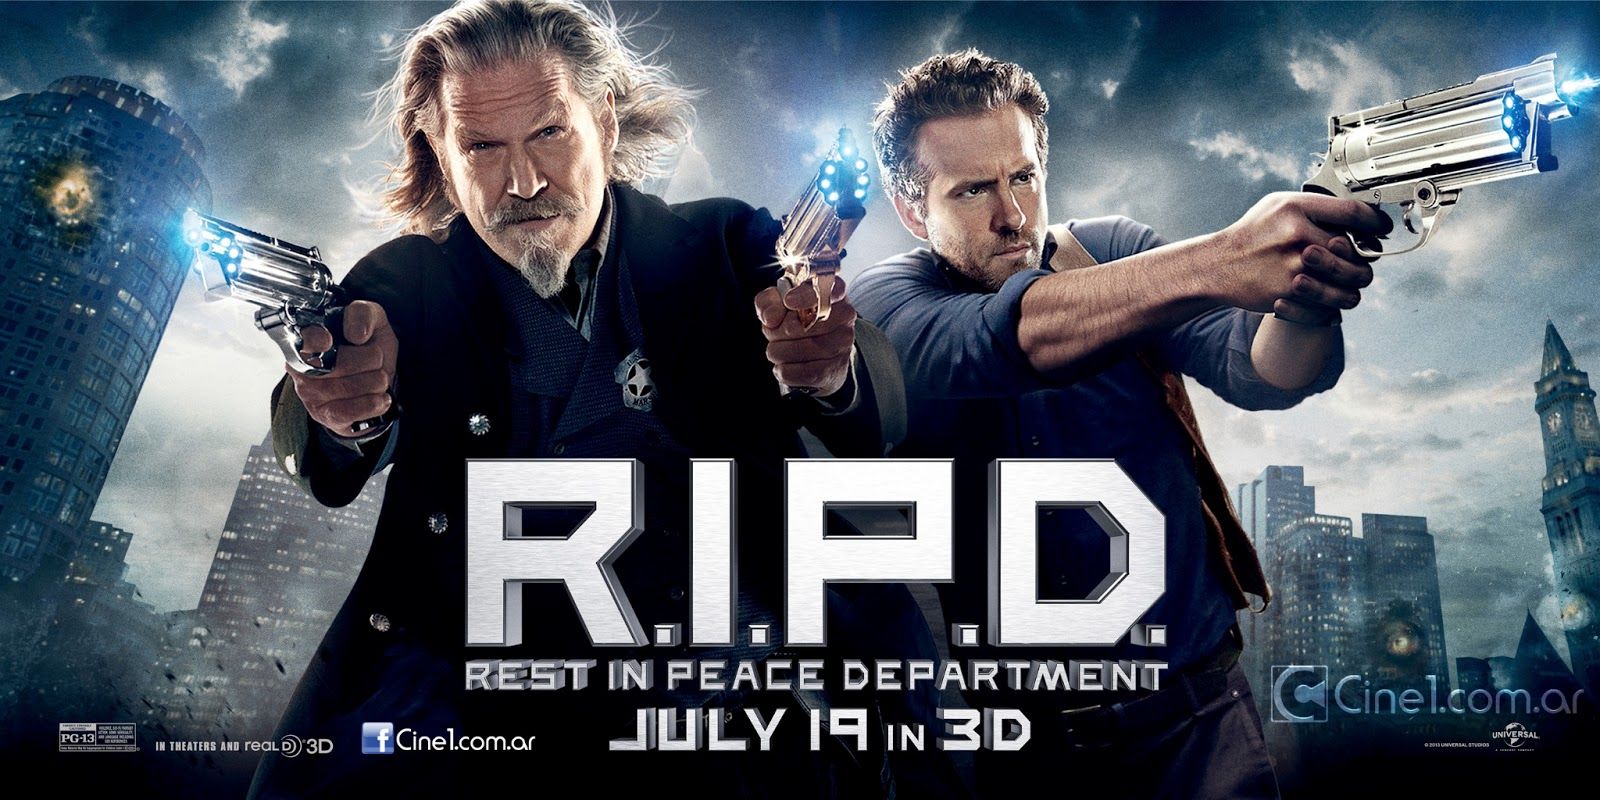 Movie review: R.I.P.D.